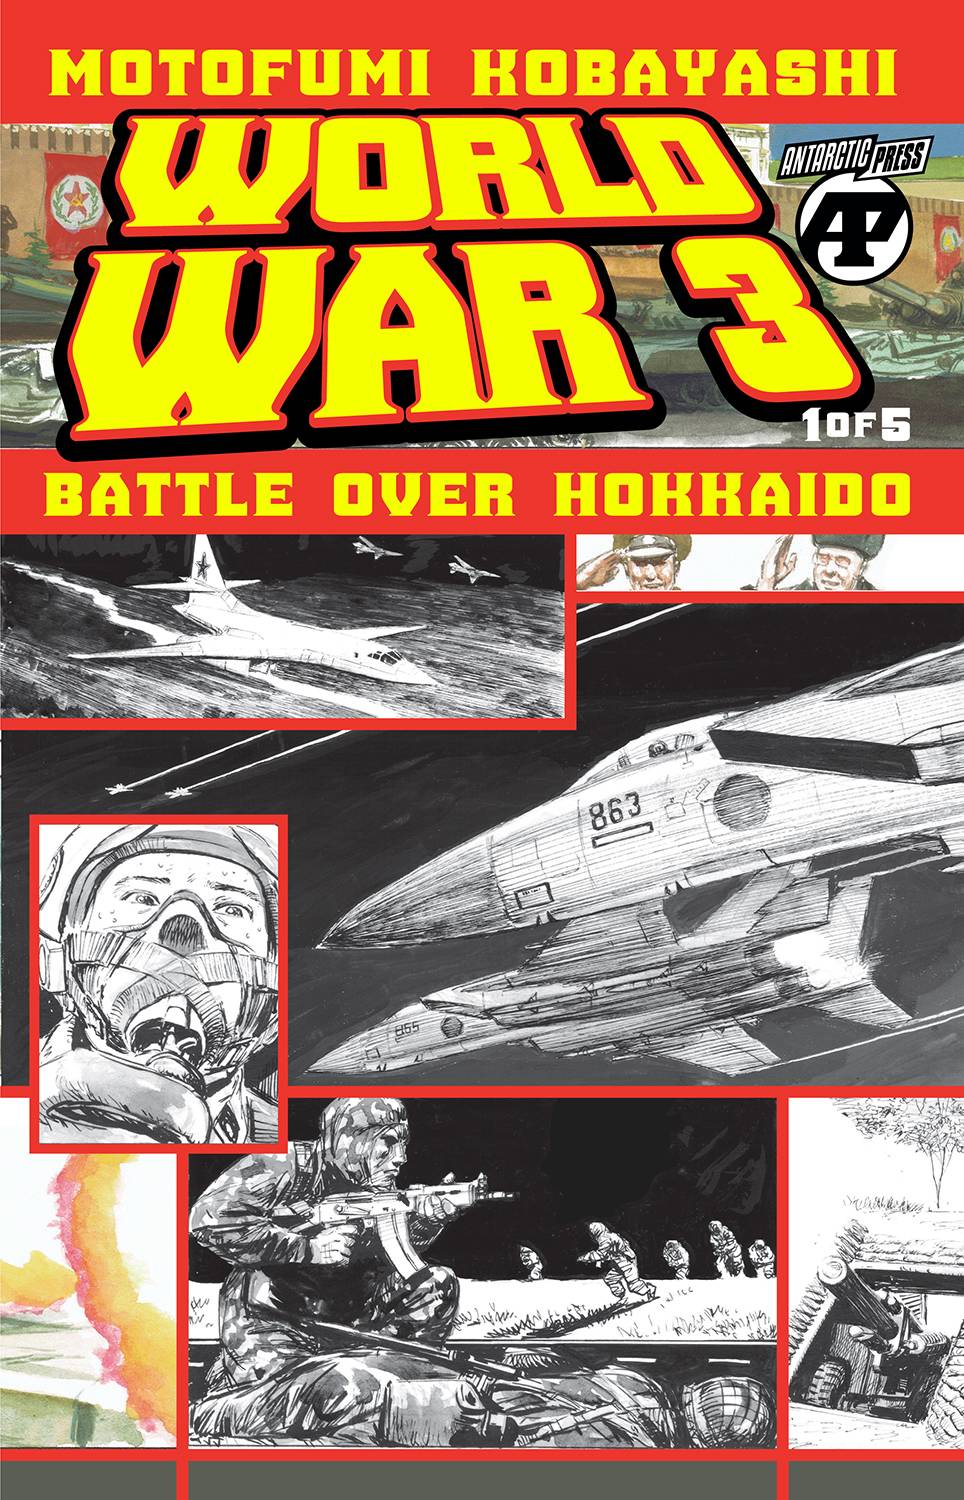 WORLD WAR 3 BATTLE OVER HOKKAIDO